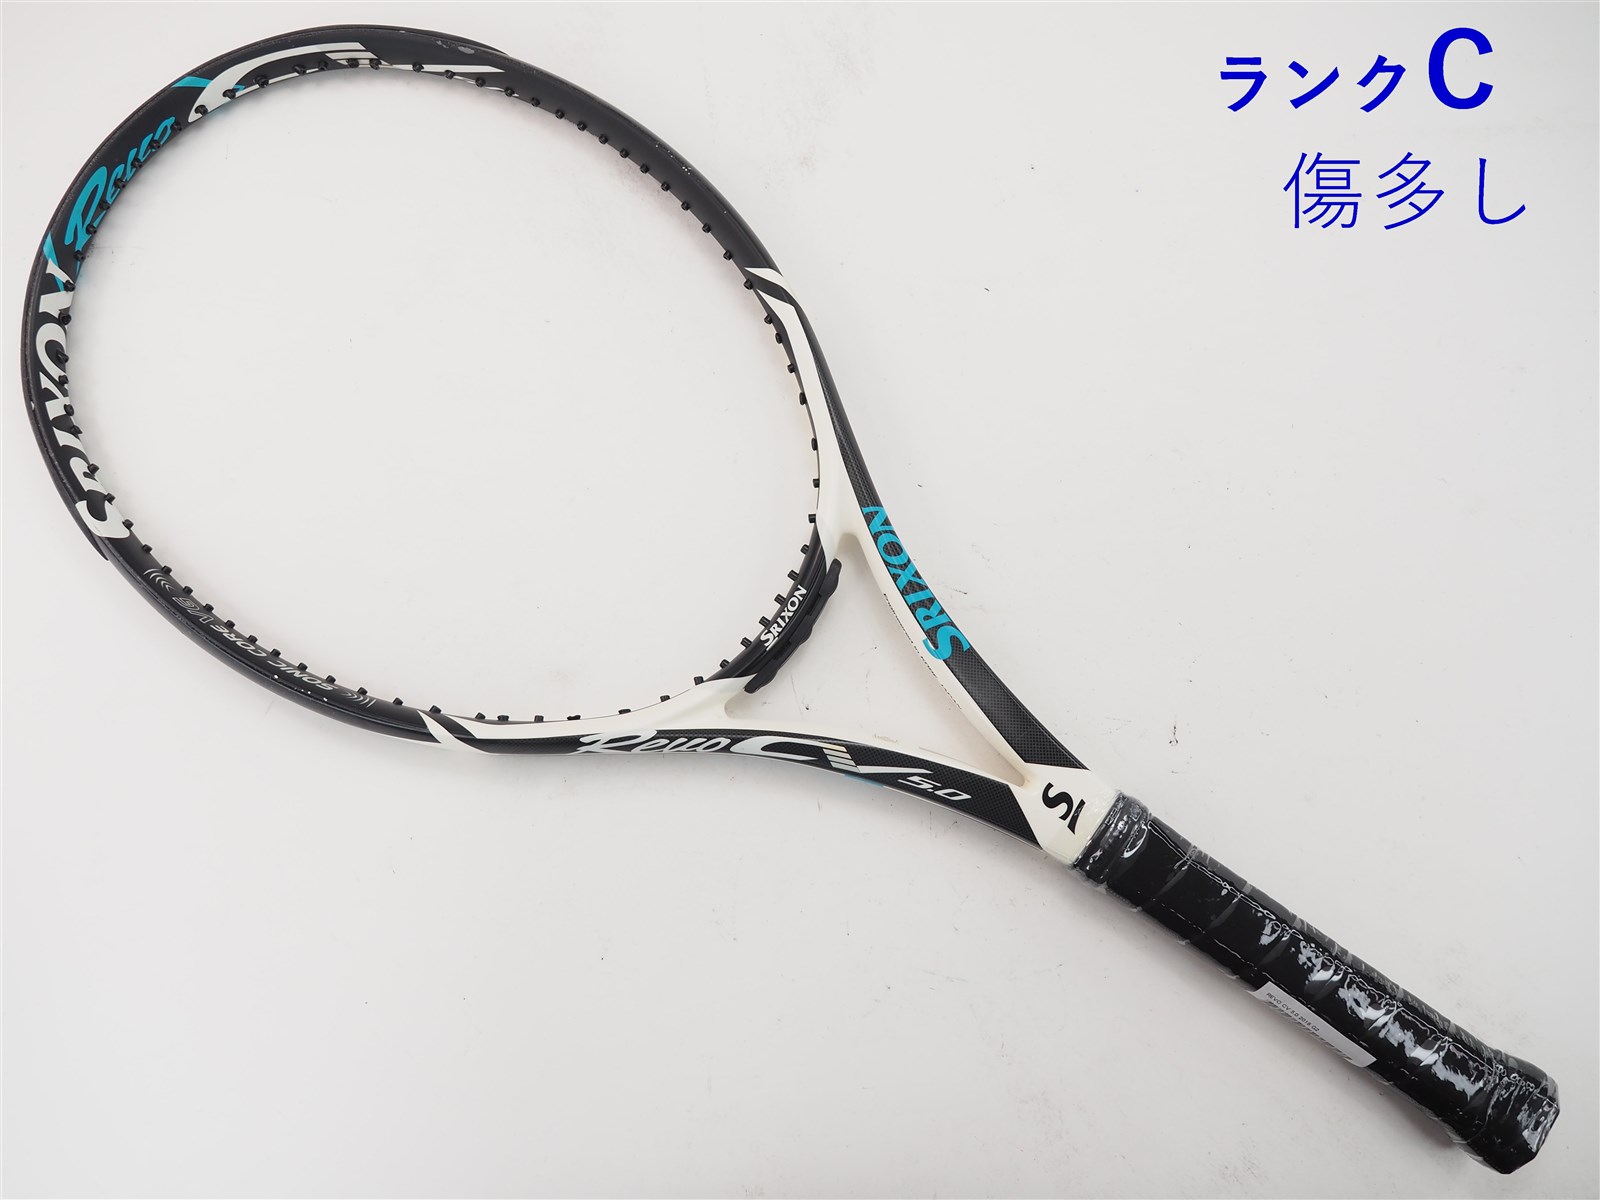 テニスラケット スリクソン レヴォ CS 8.0 2018年モデル (G1)SRIXON REVO CS 8.0 2018